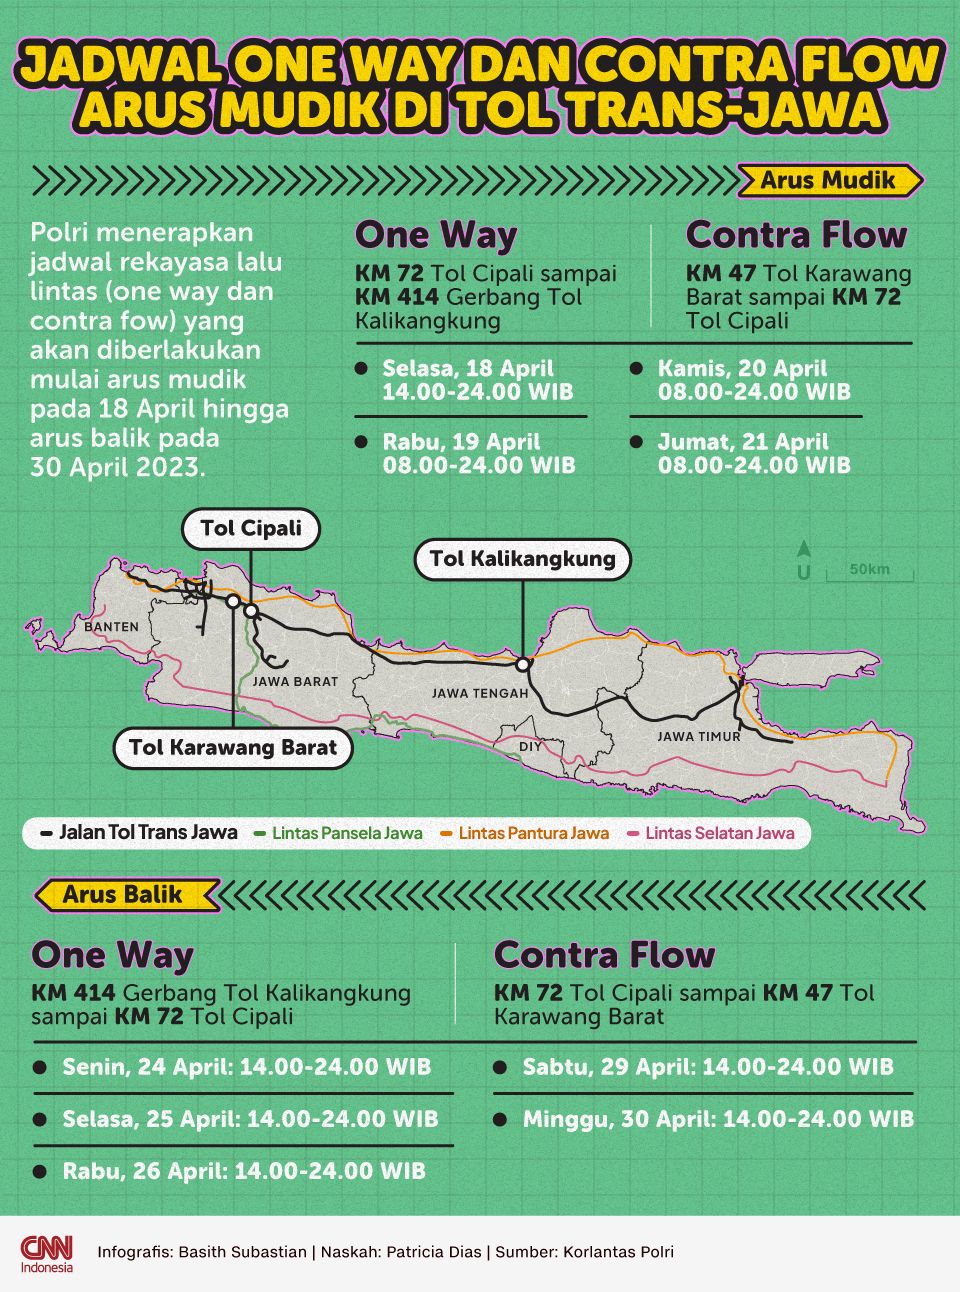 Infografis Jadwal One Way dan Contra Flow Arus Mudik di Tol Trans Jawa